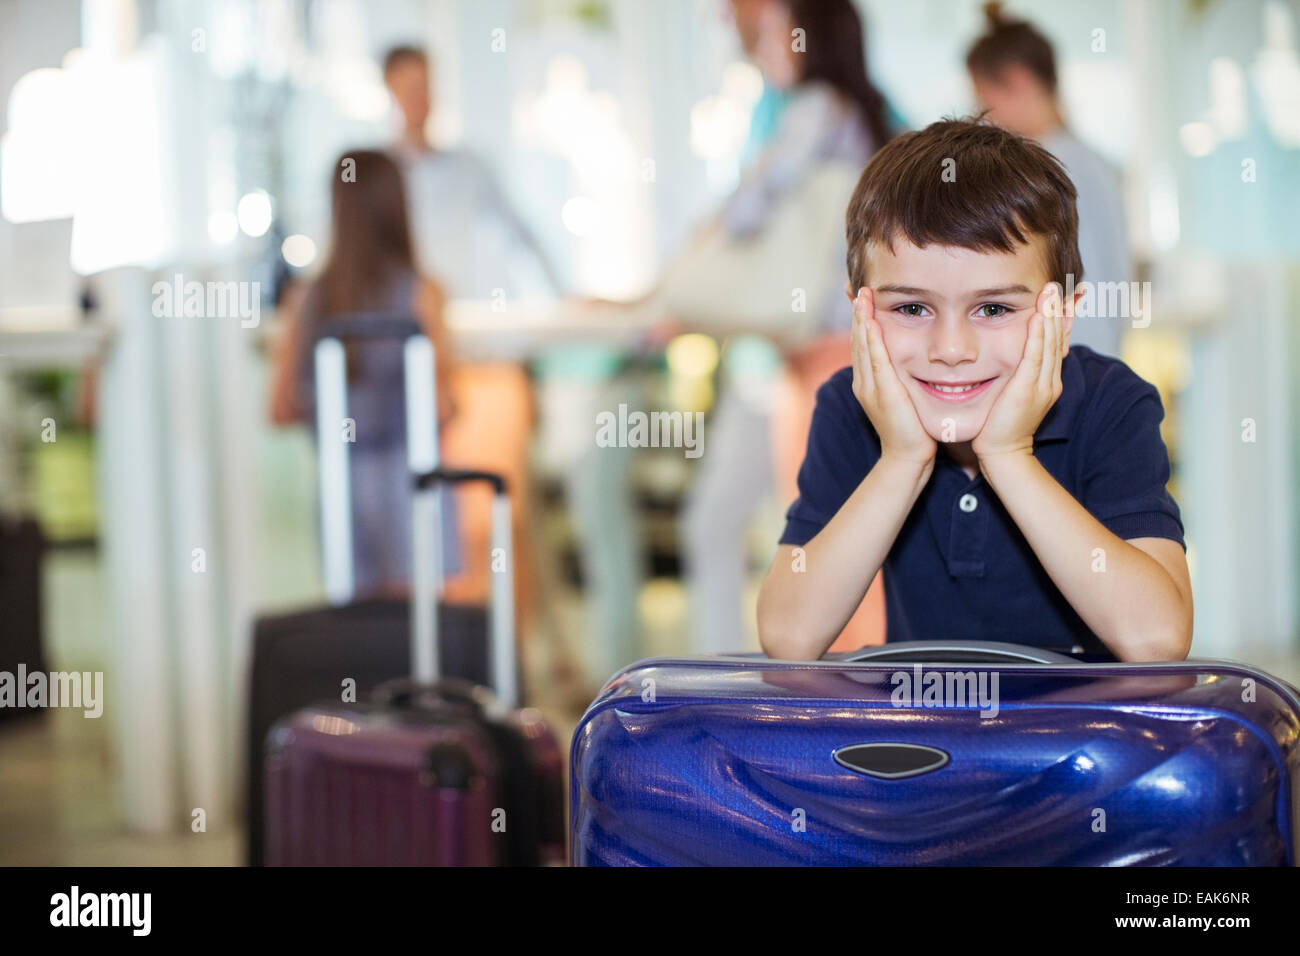 Porträt eines lächelnden jungen stützte sich auf Koffer in der Lobby des Hotels Stockfoto